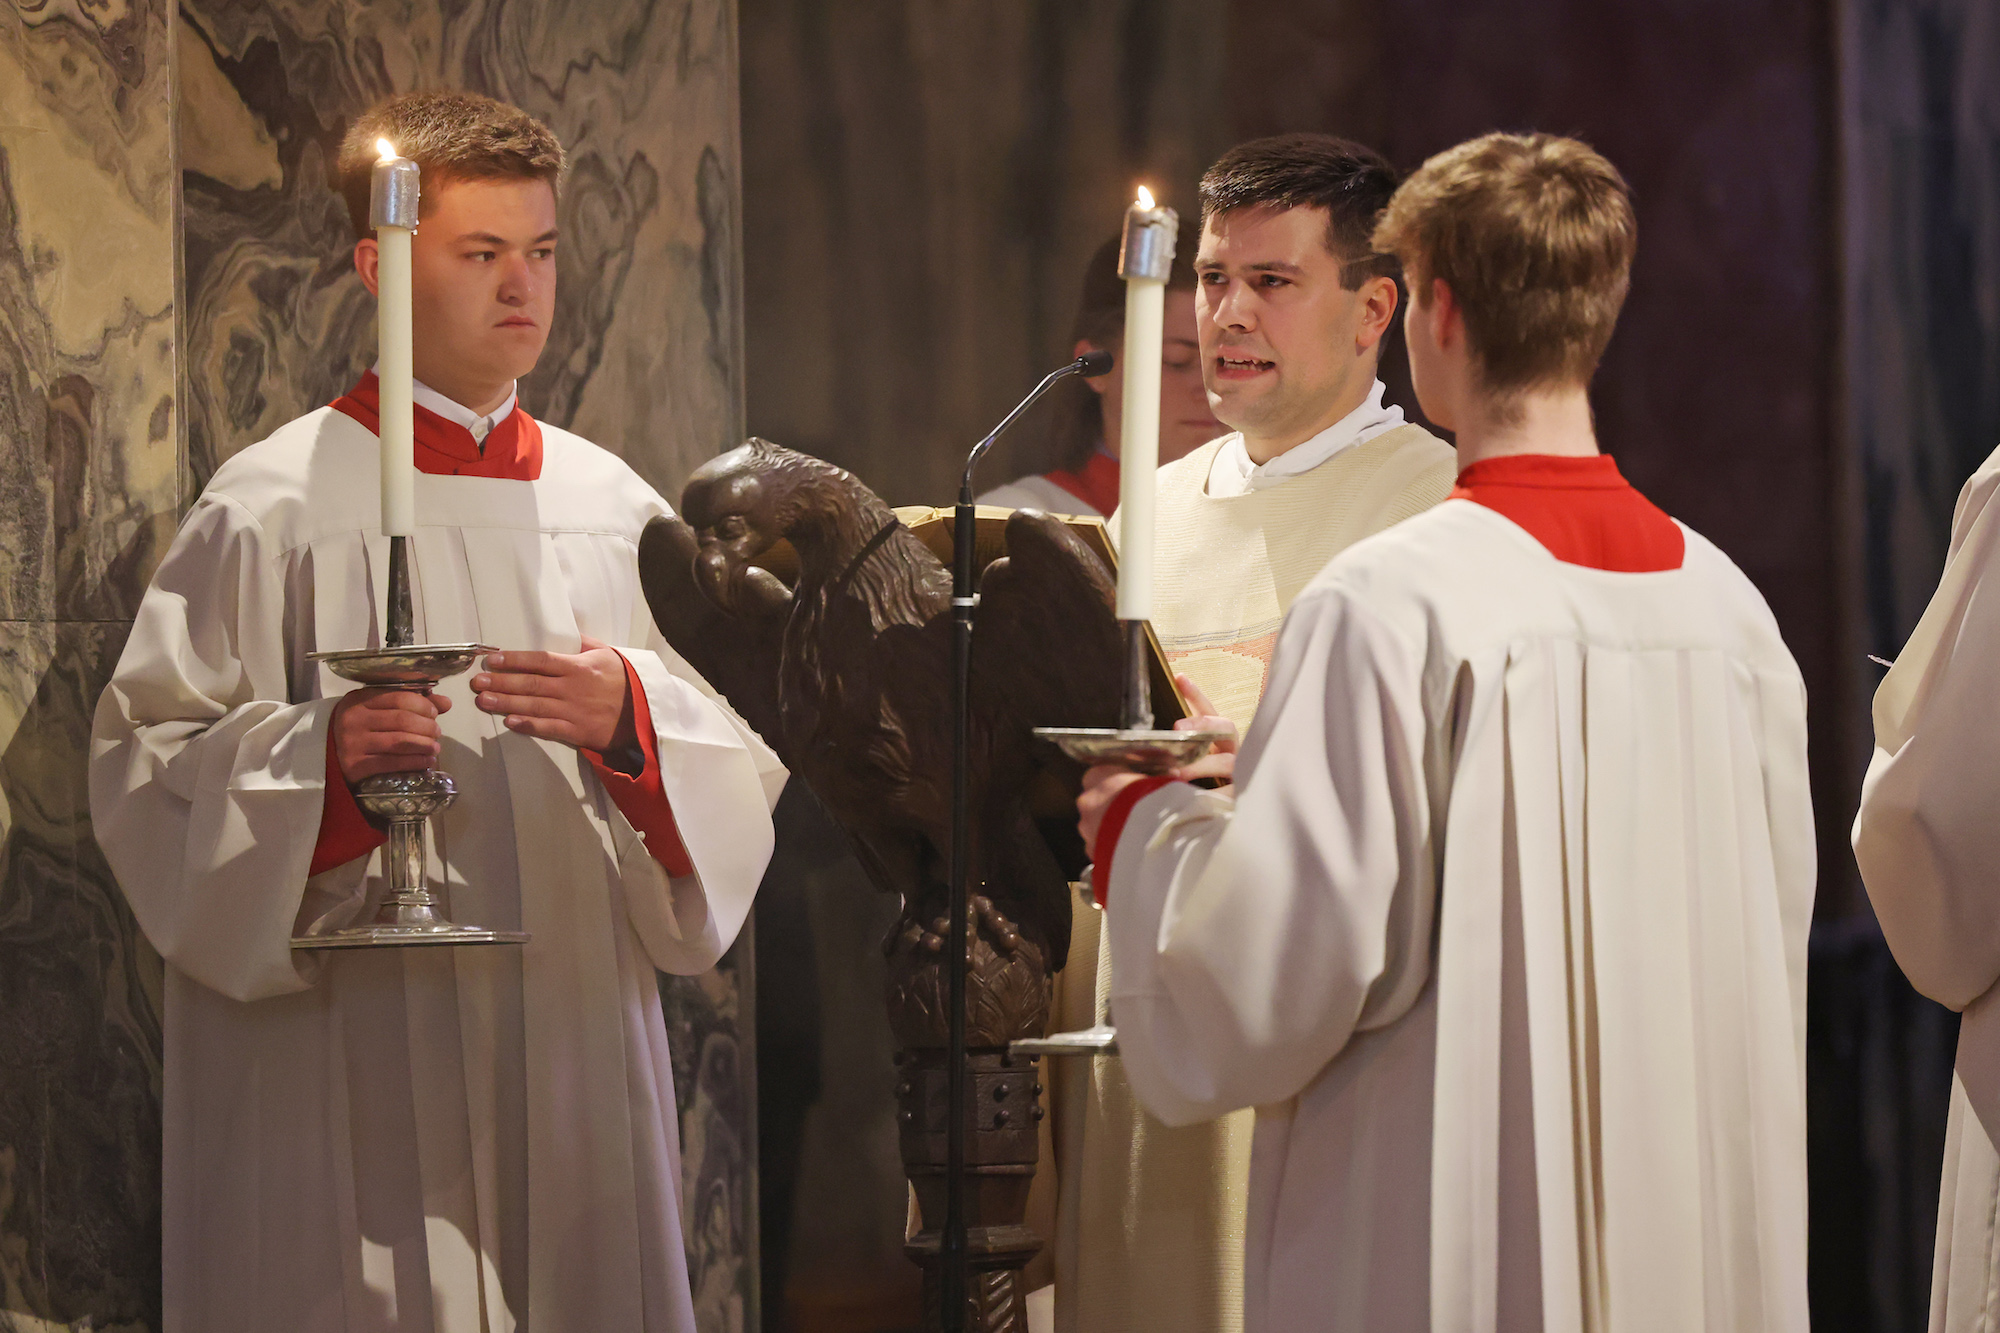 Diakon Philipp Fiala bei der Priesterweihe seiner Mitbrüder Andreas Hahne und Marco Lennartz im Mai dieses Jahres. (c) Bistum Aachen/Andreas Steindl